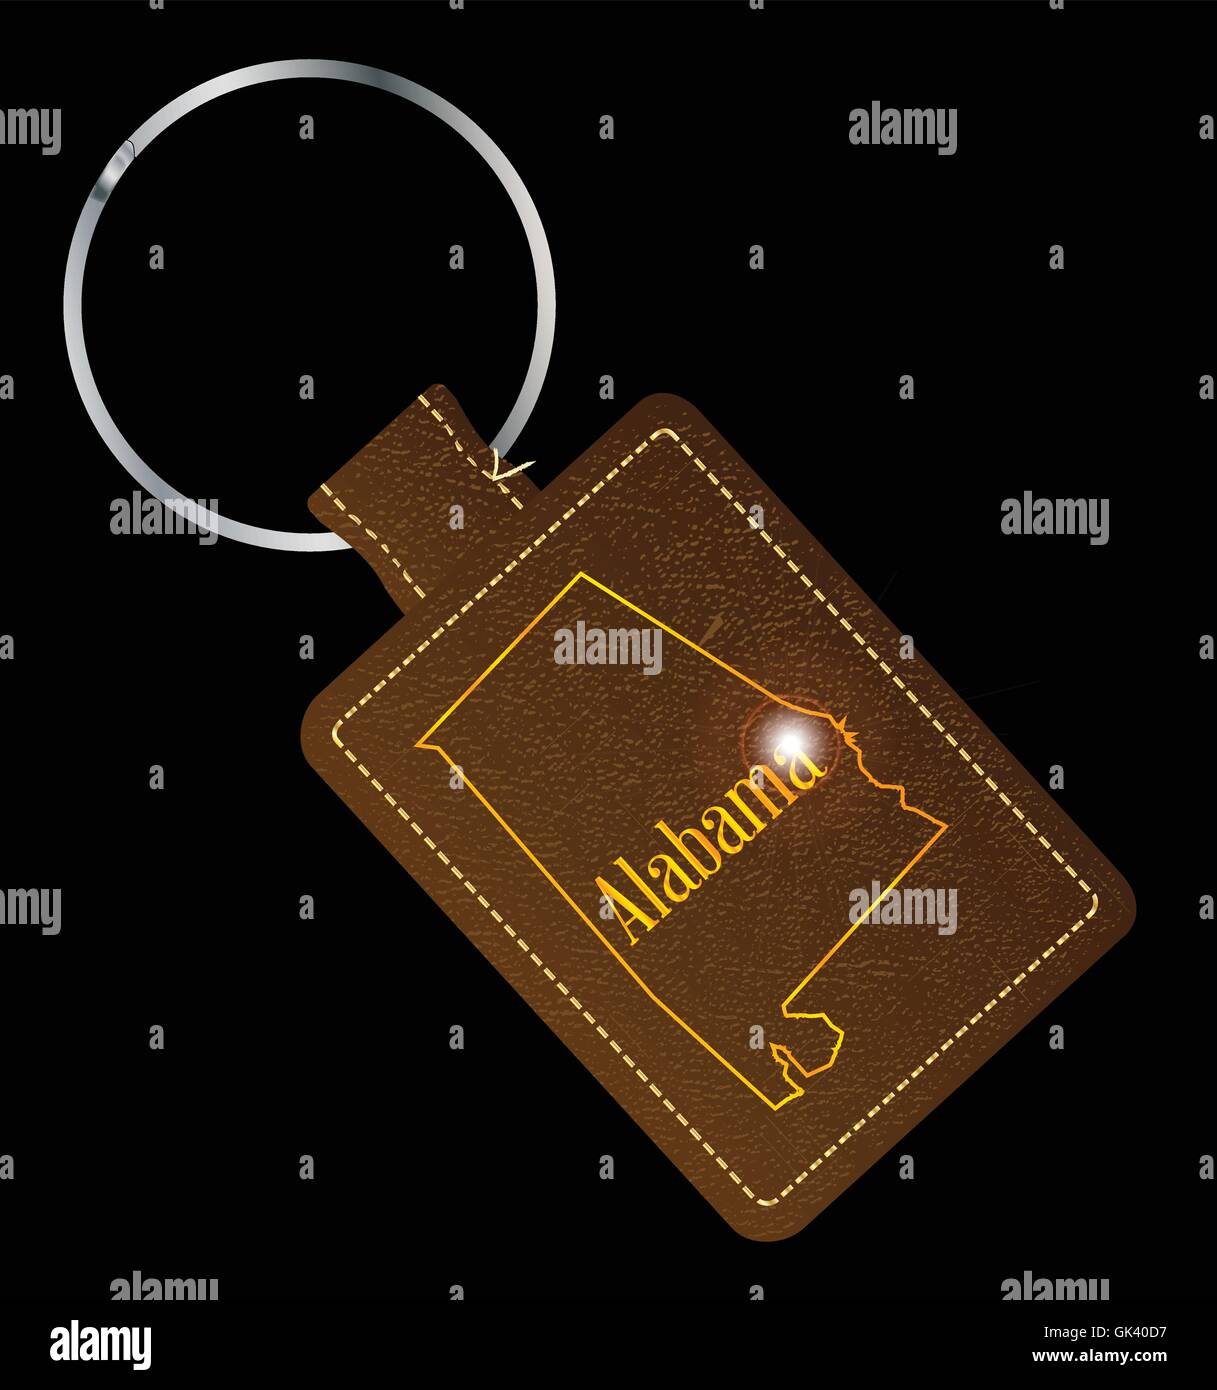 Un porte-clé en cuir brun et l'anneau avec l'état de l'Alabama, USA Site contours Illustration de Vecteur